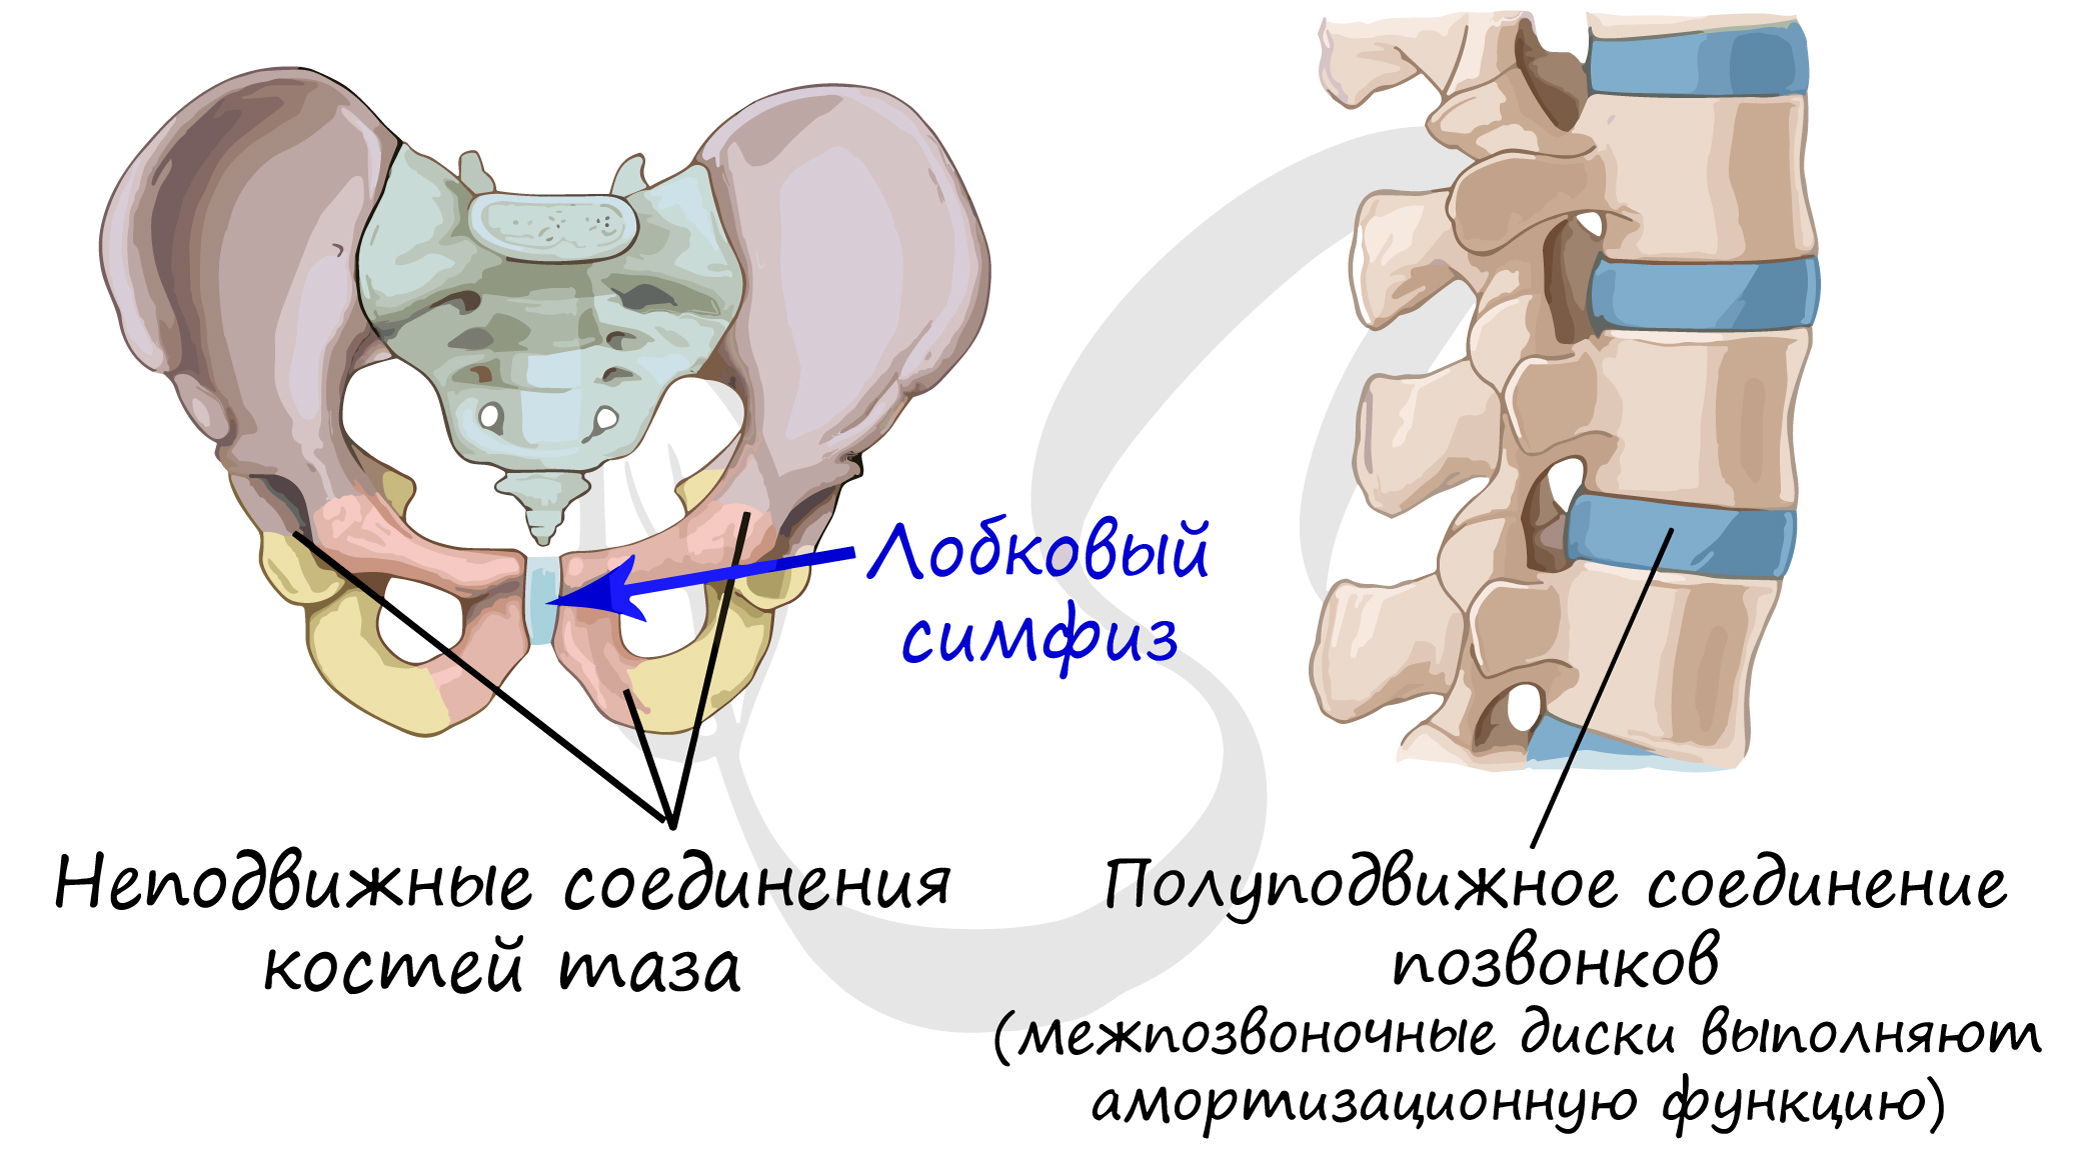 Лобковые кости соединение. Соединение костей таза полуподвижное. Лобковый симфиз полуподвижное соединение. Соединение тазовых костей неподвижное полуподвижное подвижное. Кости таза подвижные полуподвижные неподвижные.